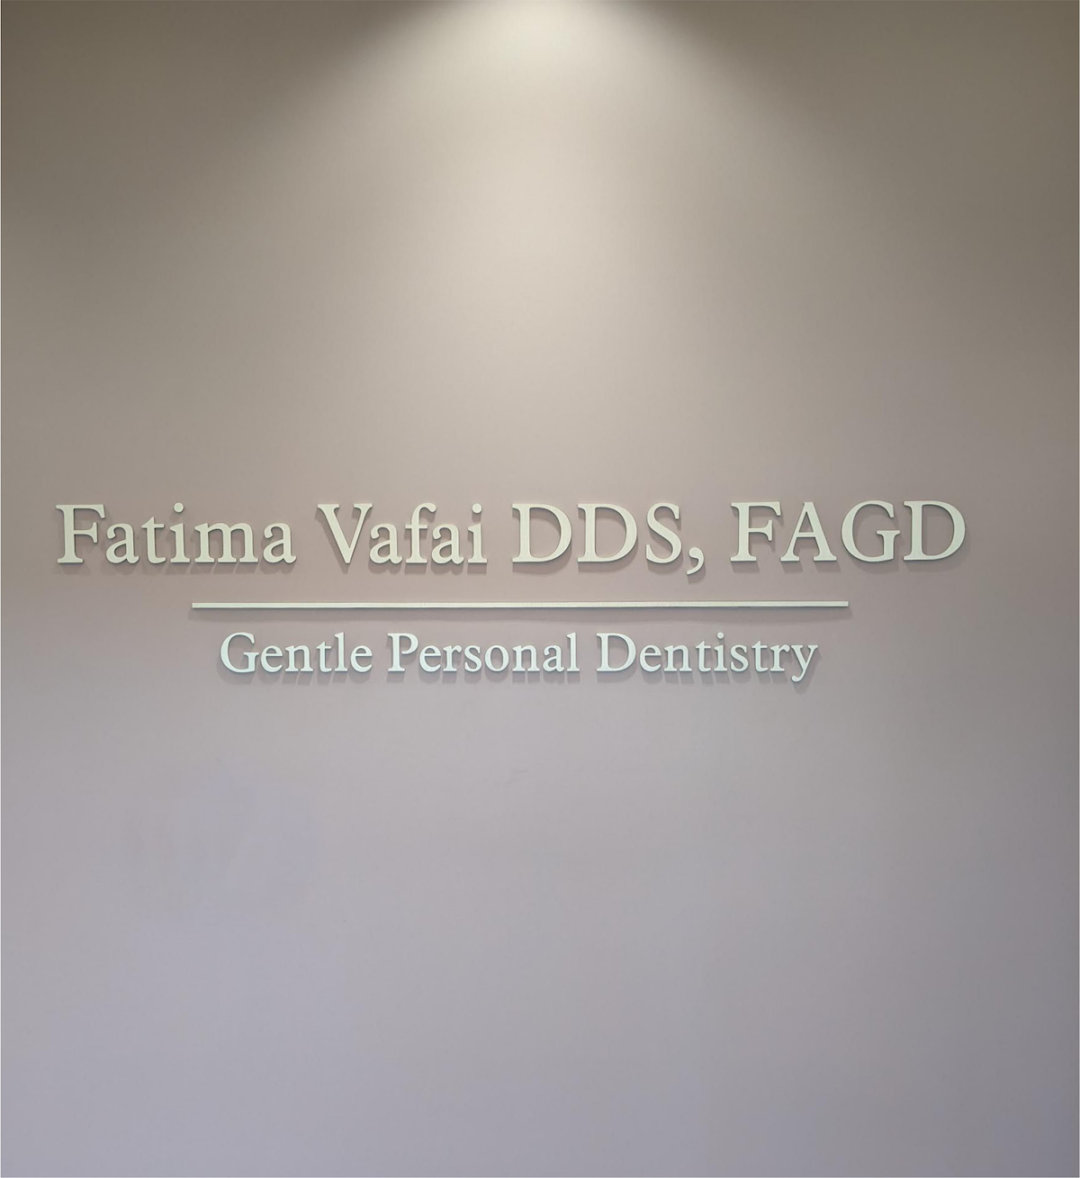 Fatima Vafai, DDS – San Jose, CA